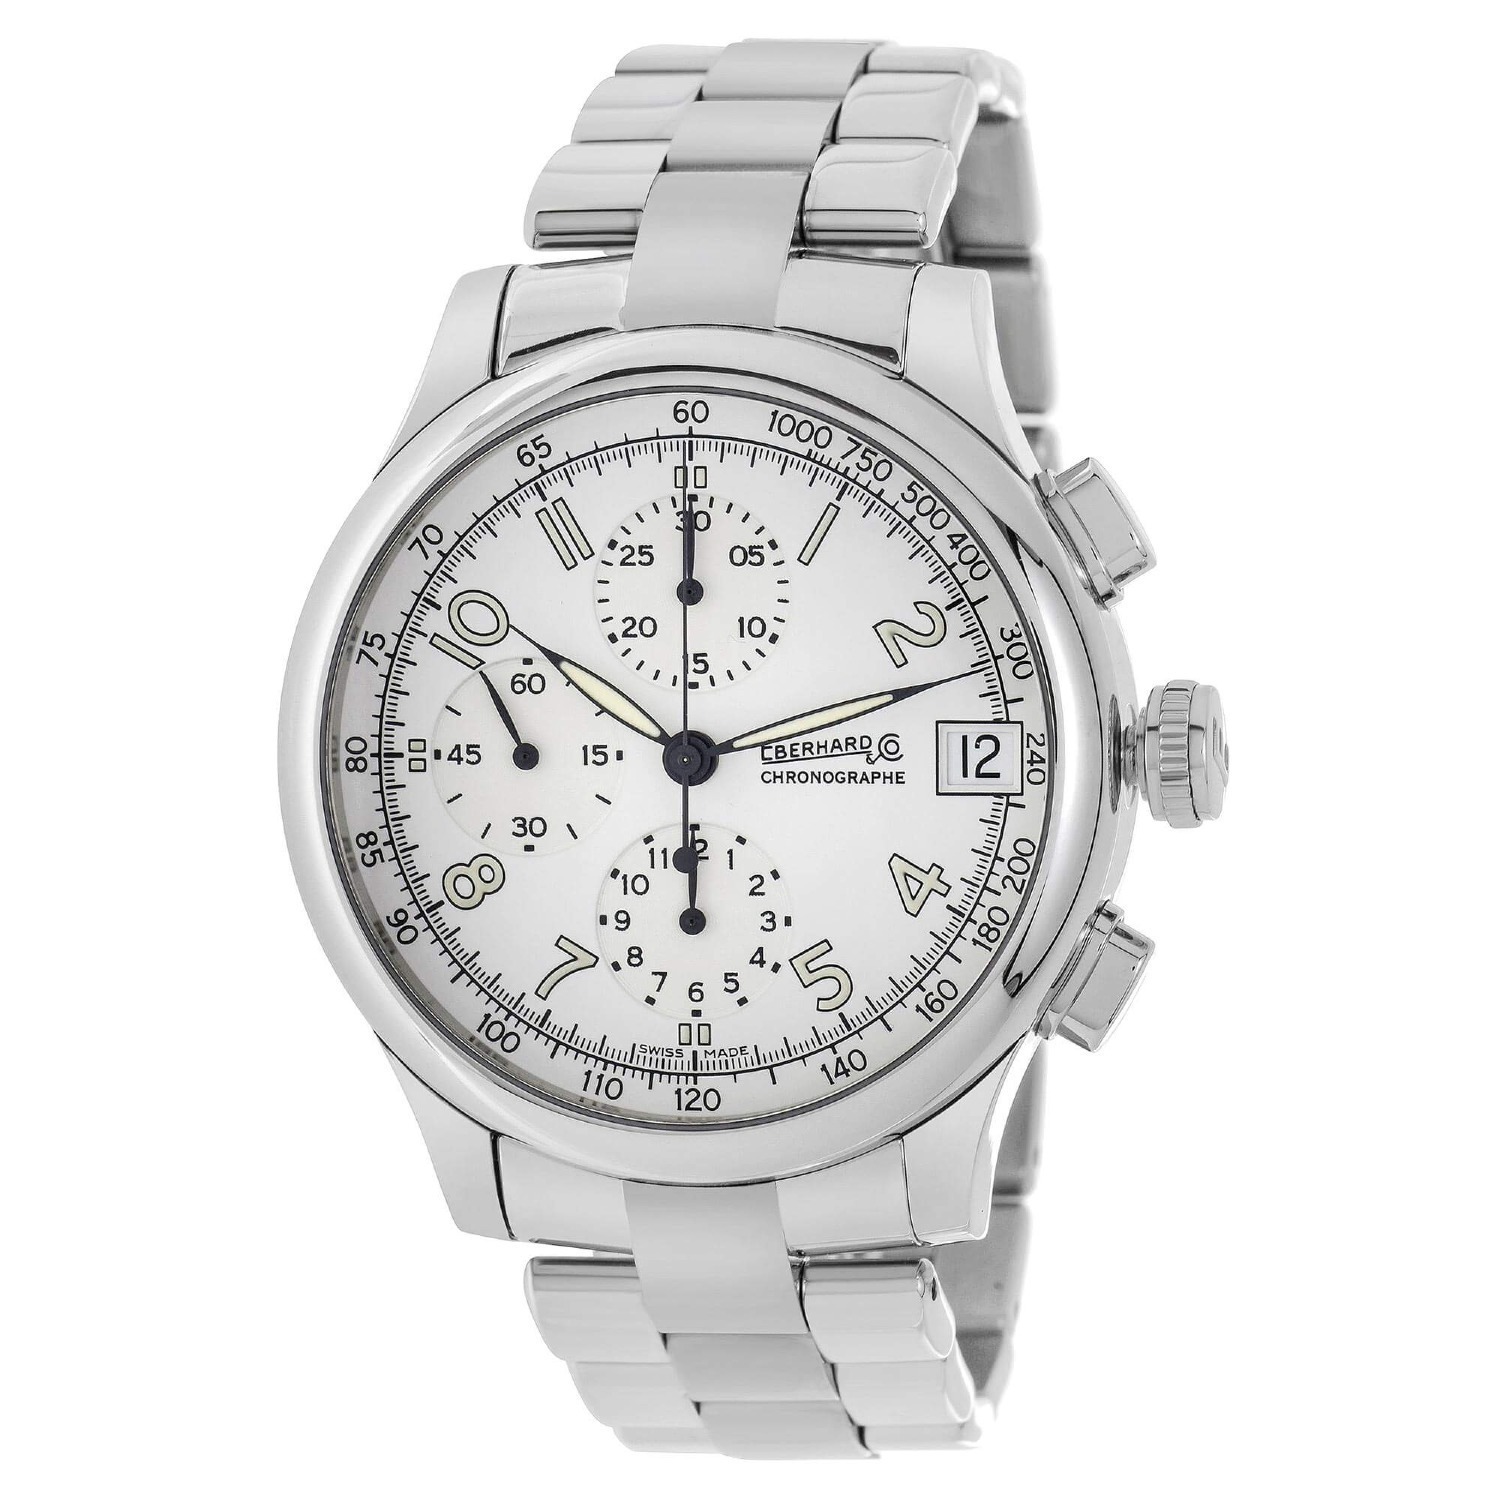 Eberhard & Co. Men's Watch Traversetolo Chronograph White Dial SS Bracelet $979 + Free Shipping